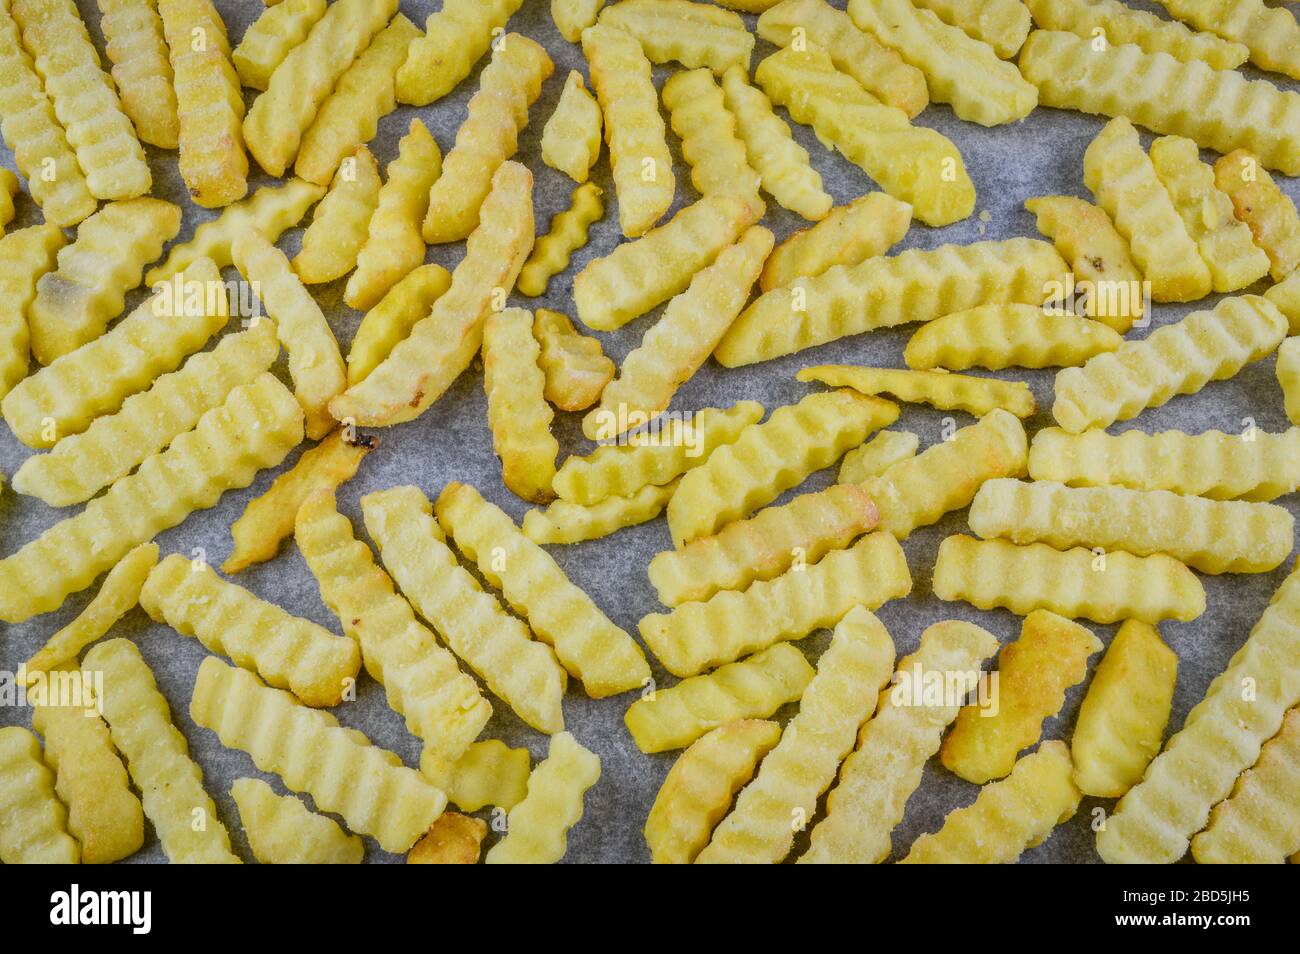 Gefrorene pommes frites auf Backpapier, das im Backofen gegart werden kann  Stockfotografie - Alamy